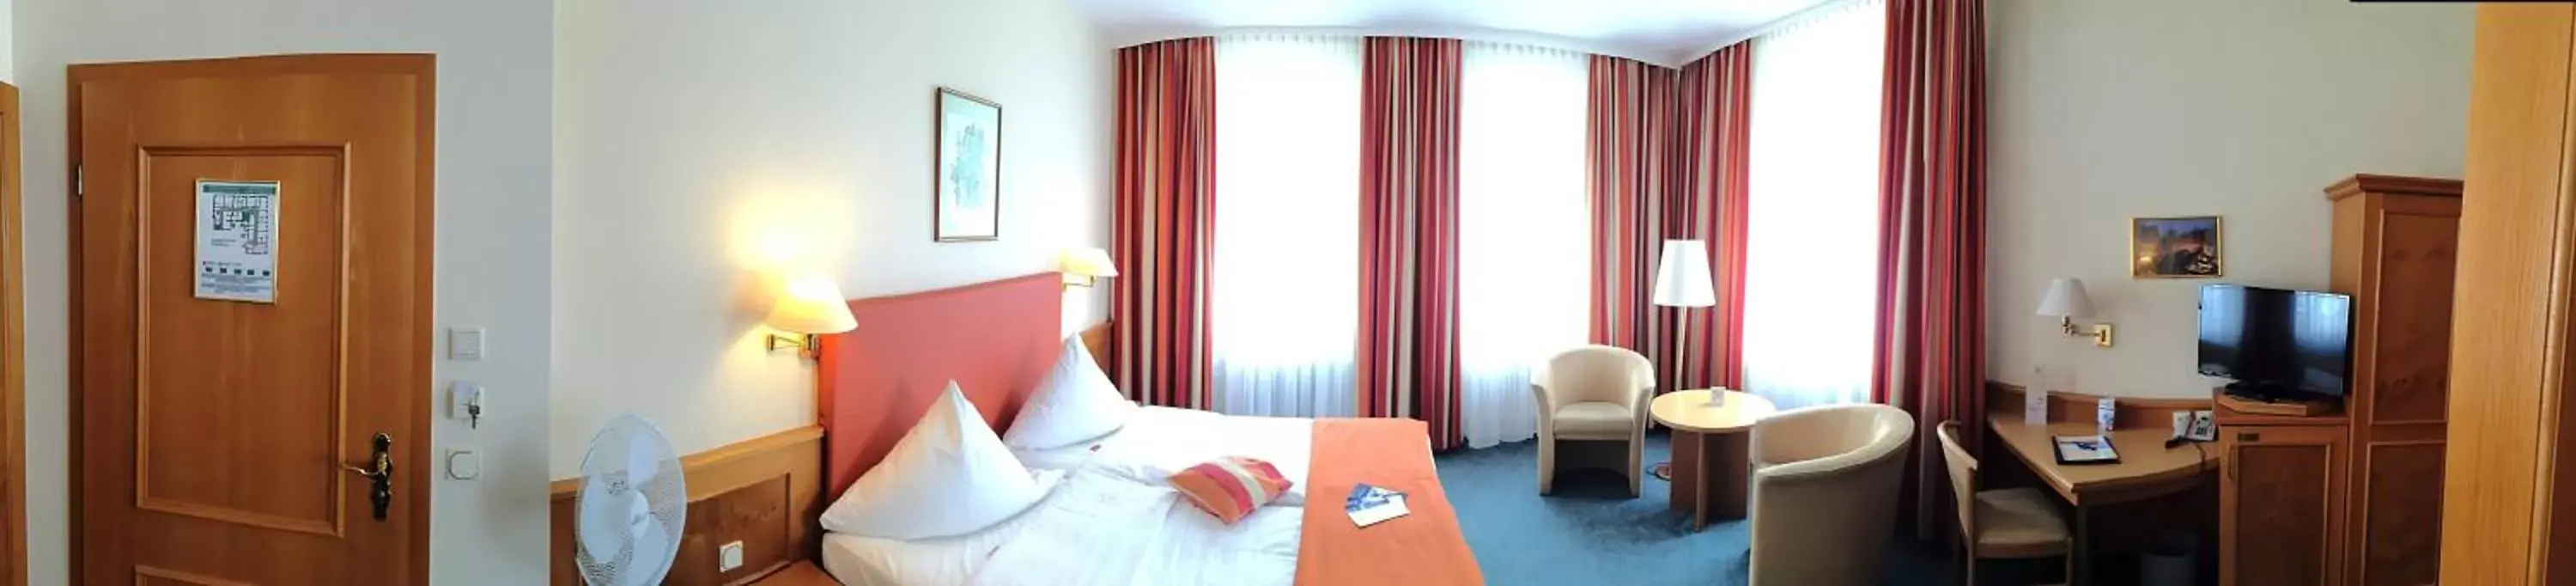 Other, Room Photo in City Partner Hotel Holländer Hof